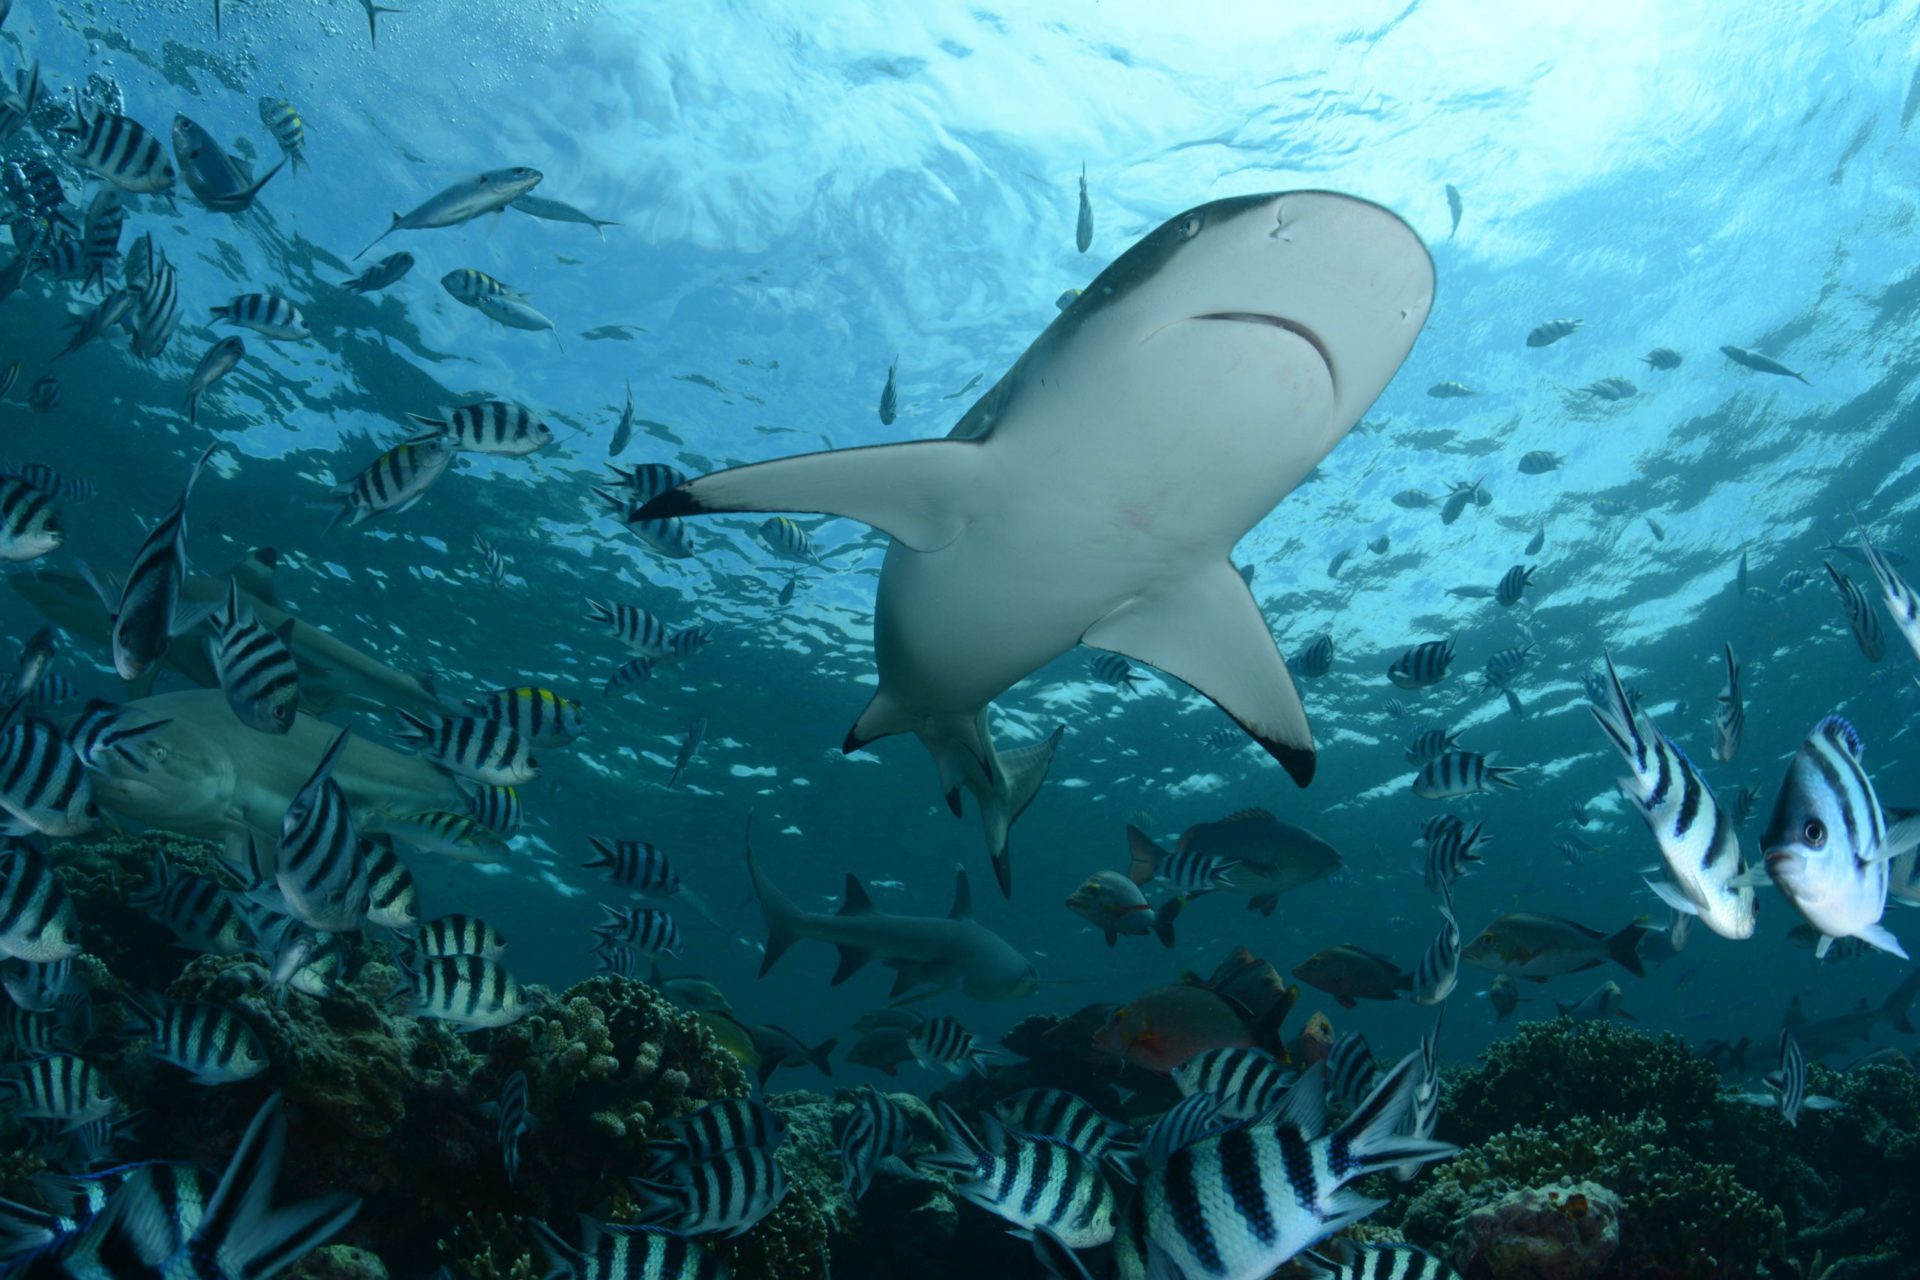 Maldives Planning to Legalise Shark Fishing